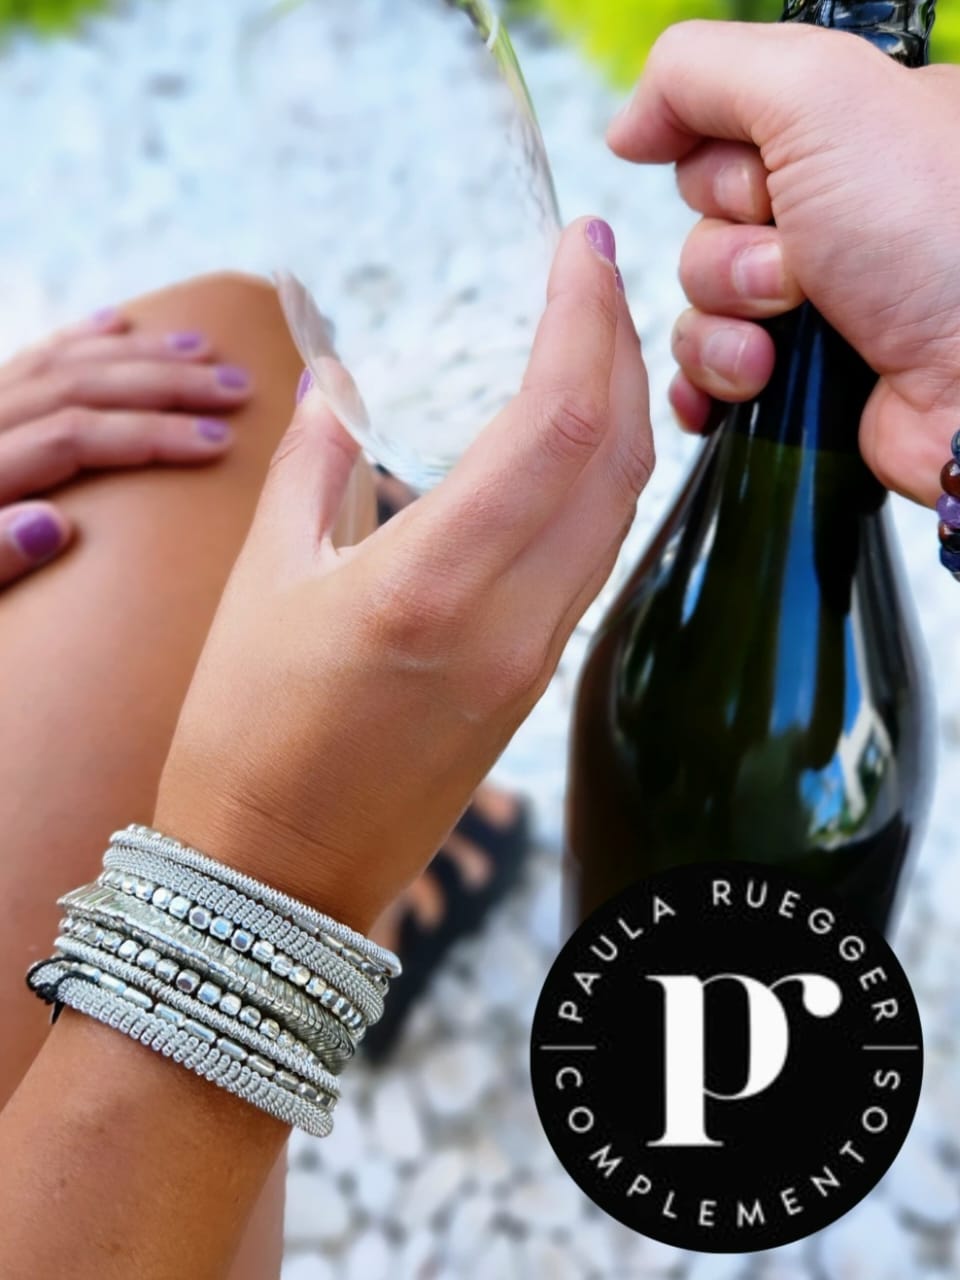 El dia internacional del Champagne | El magazine de vinos, gastronomía y lifestyle para las mentes inquietas